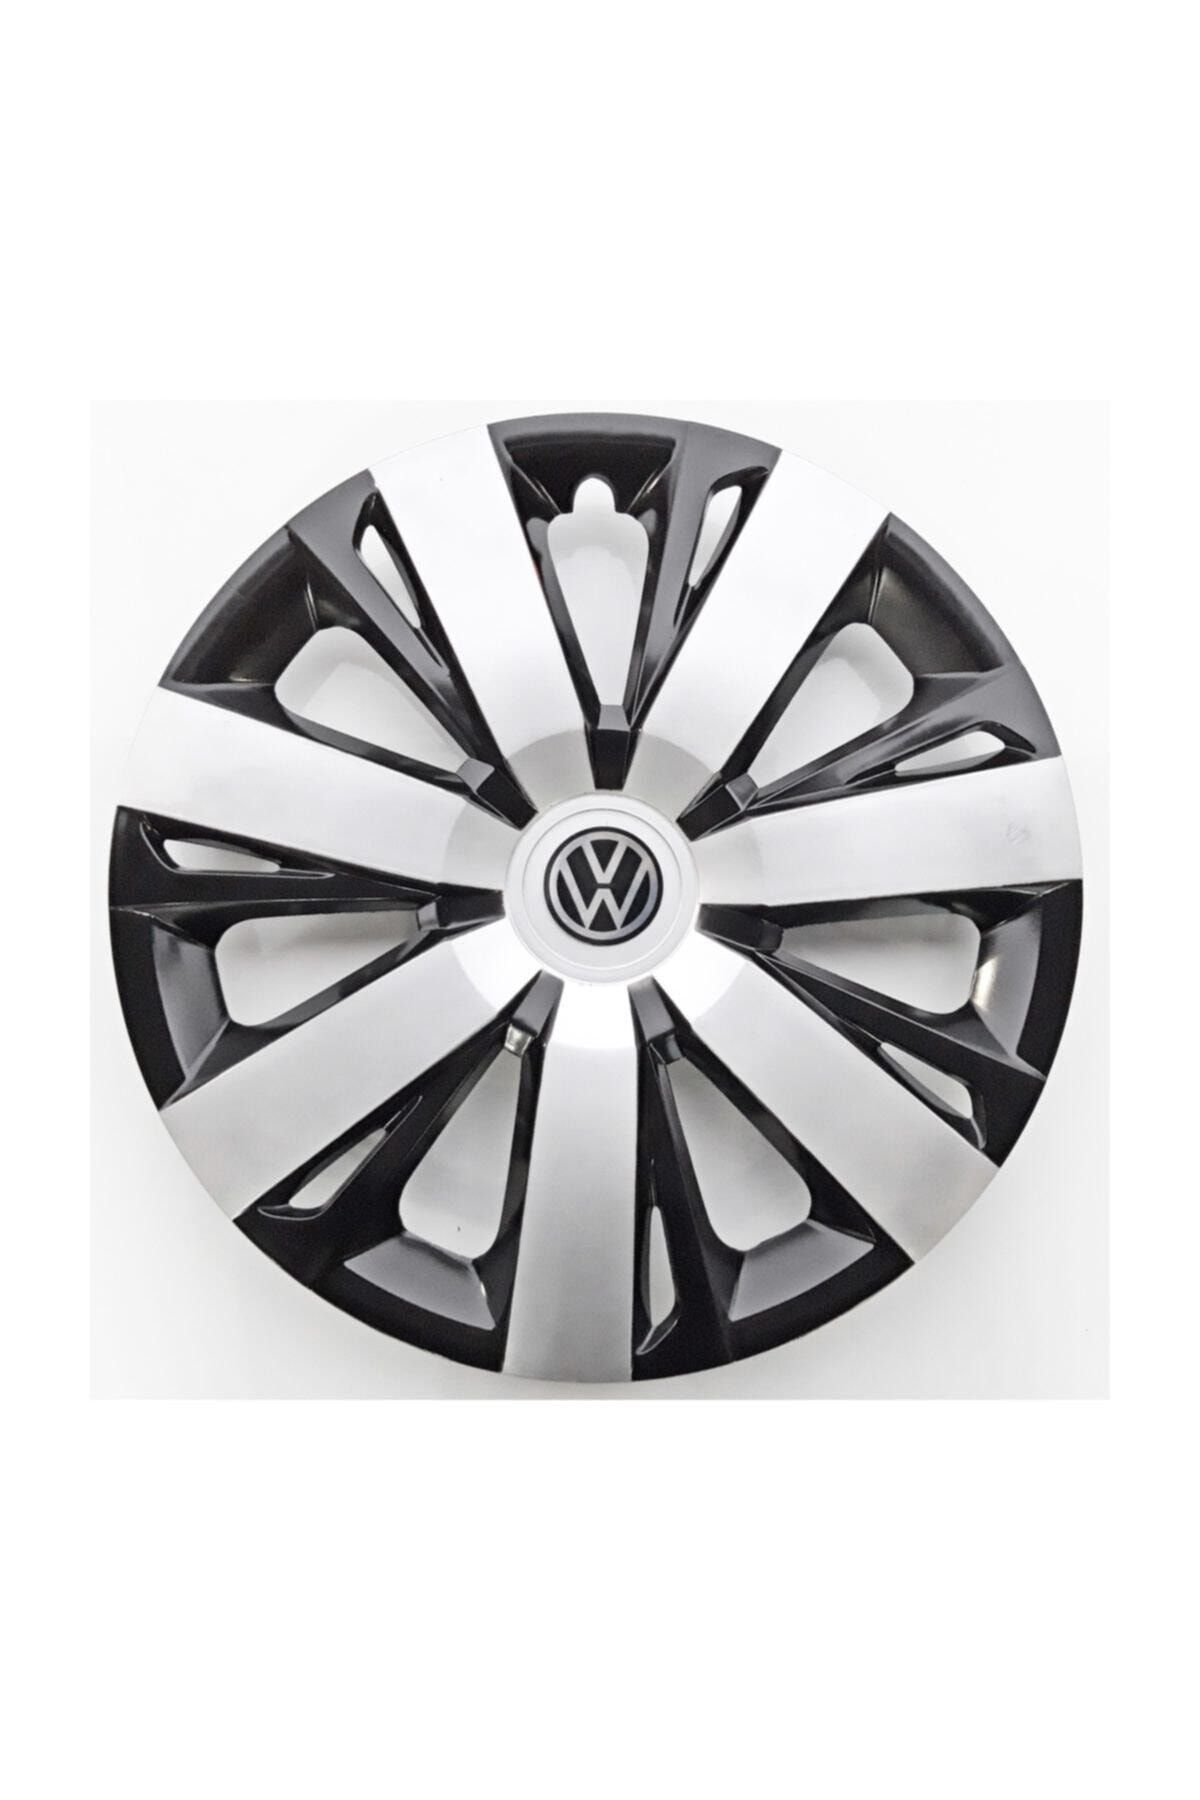 Genel Markalar 16'' Inç Volkswagen Jant Kapağı 4 Adet Çelik Jant Görünümlü Renkli - Kırılmaz Esnek